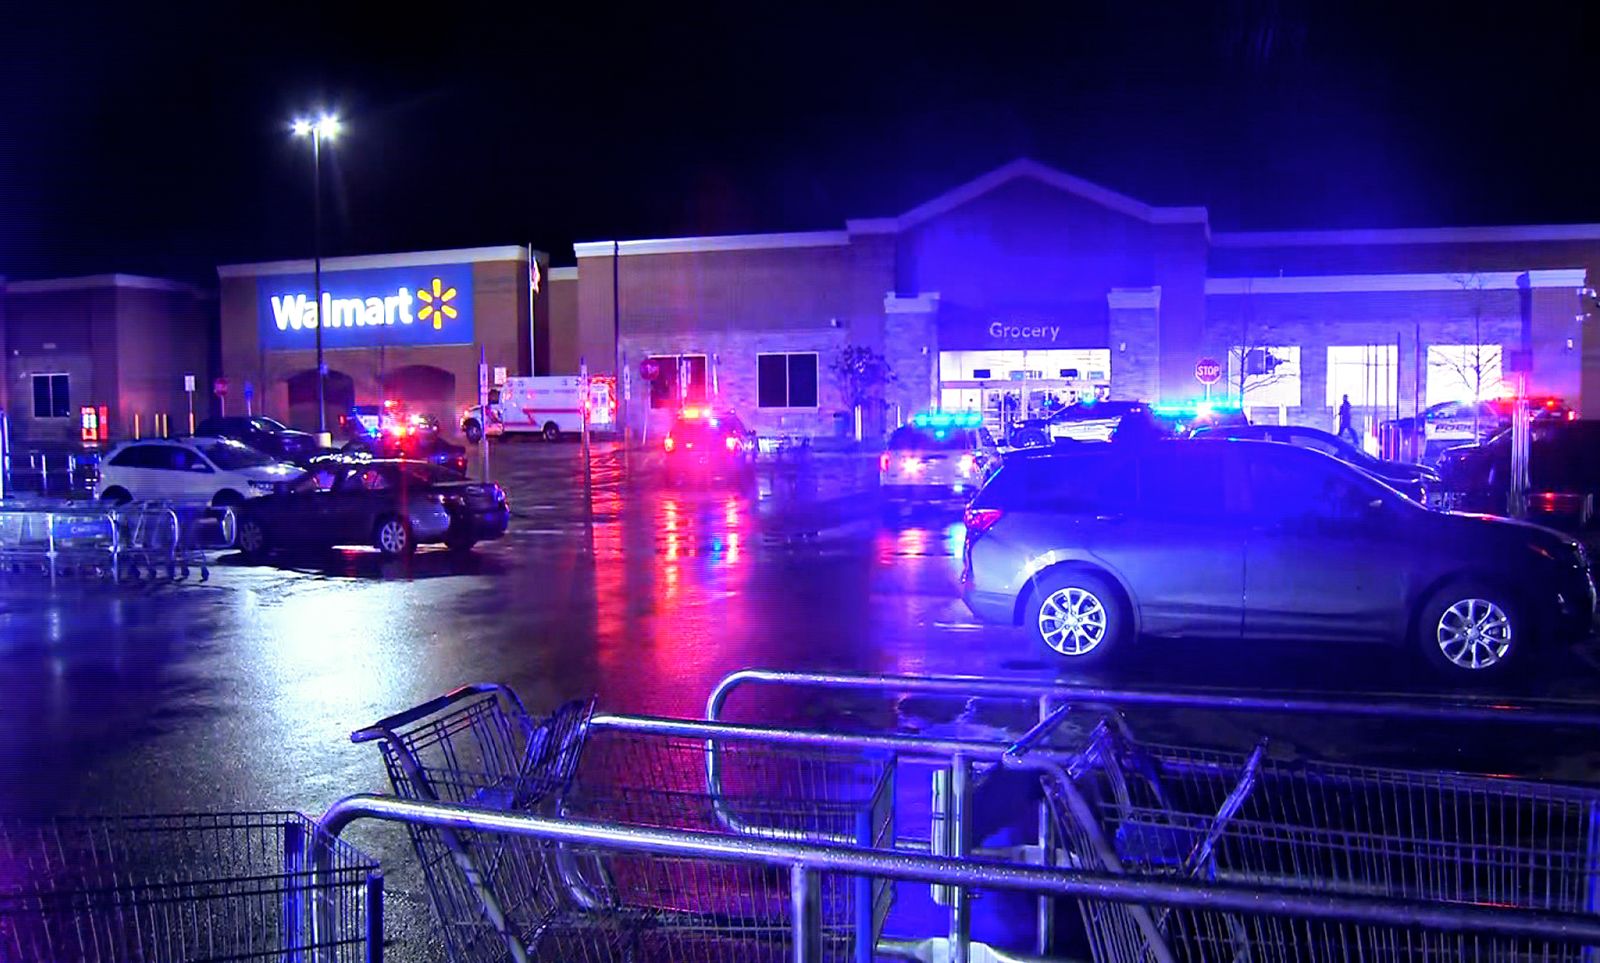 "Walmart shooting"